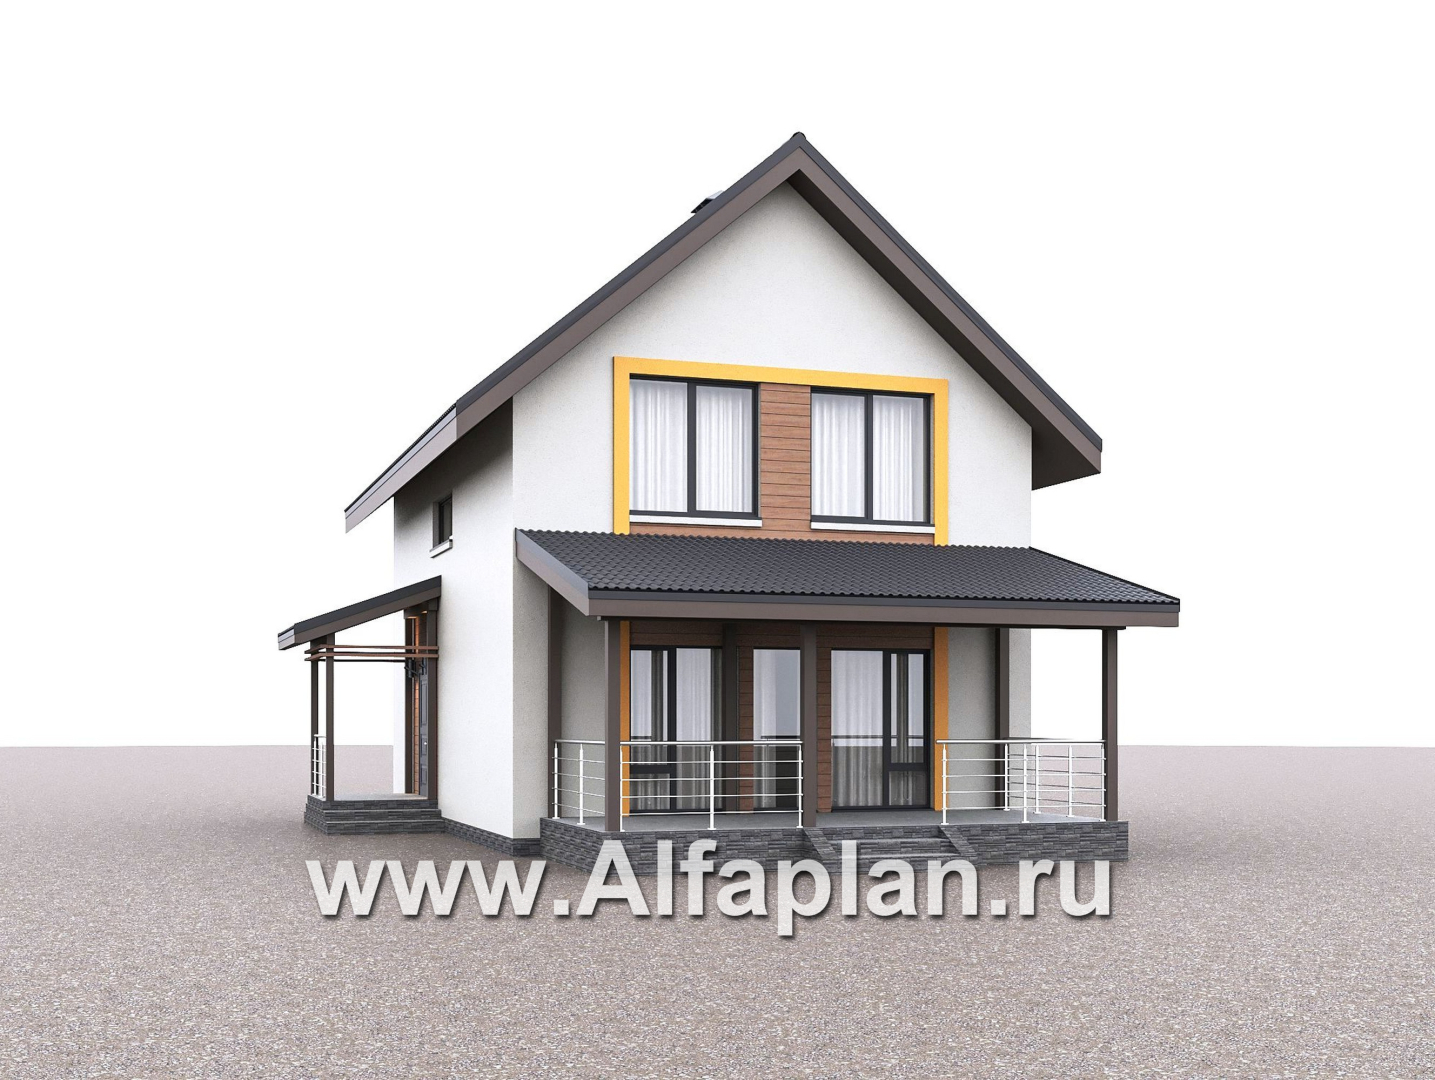 Проекты домов Альфаплан - "Викинг" - проект дома, 2 этажа, с сауной и с террасой, в скандинавском стиле - дополнительное изображение №3